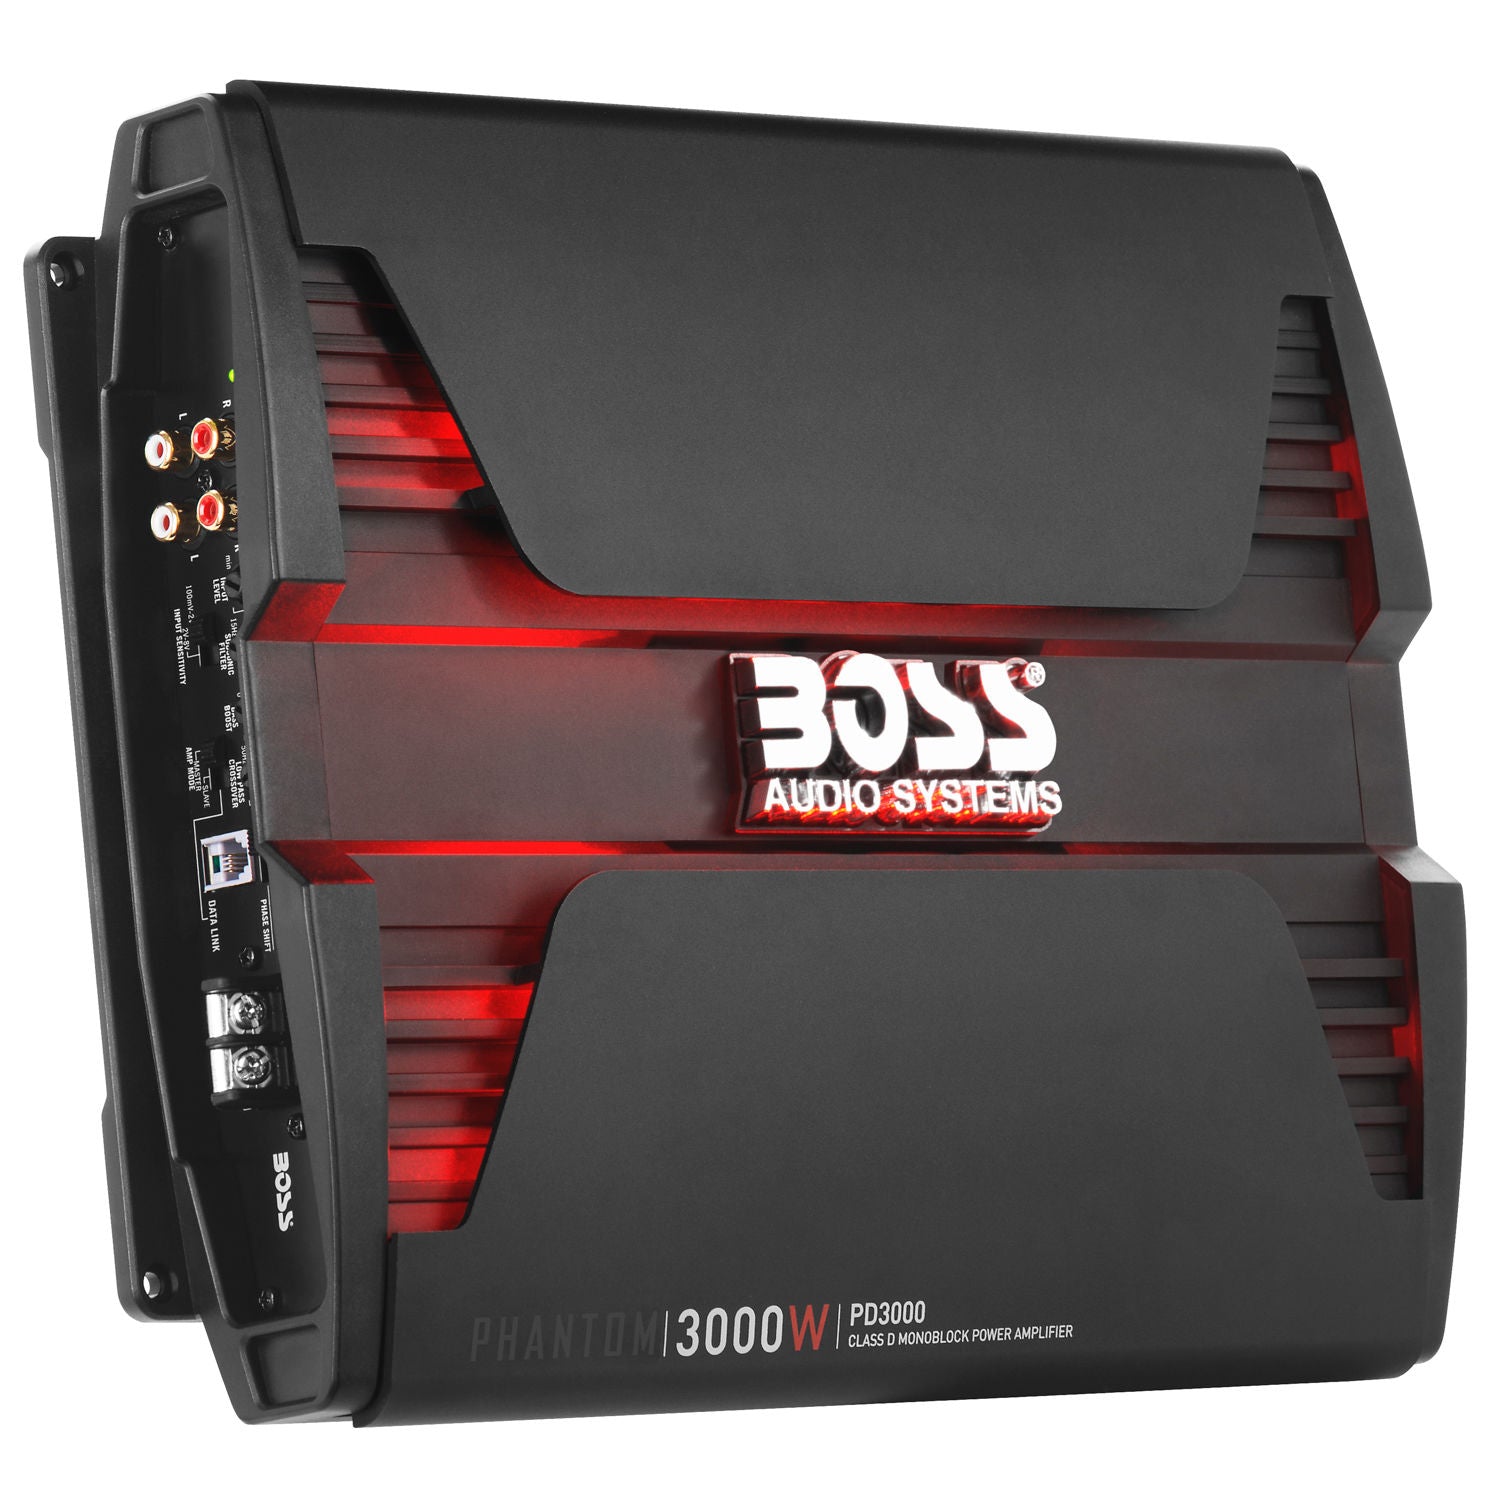 Boss PD3000 - Phantom MODEL 3000W High Output Monoblock, Class D Amplifier Dim:13"L 10.31"W 2.25"H